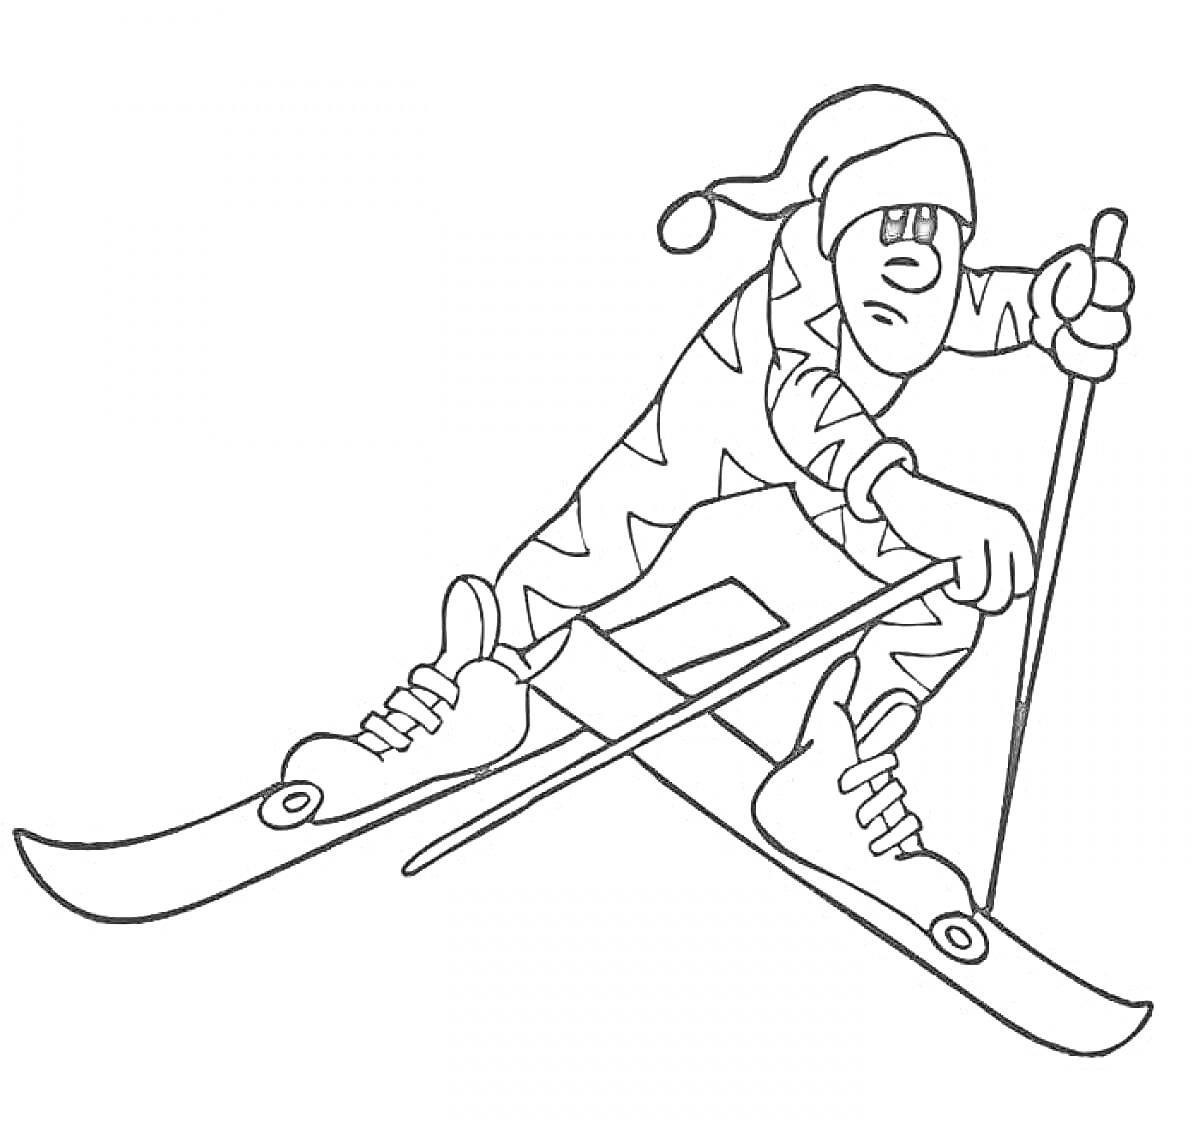 Раскраска Лыжник в зимней экипировке на лыжах с лыжными палками